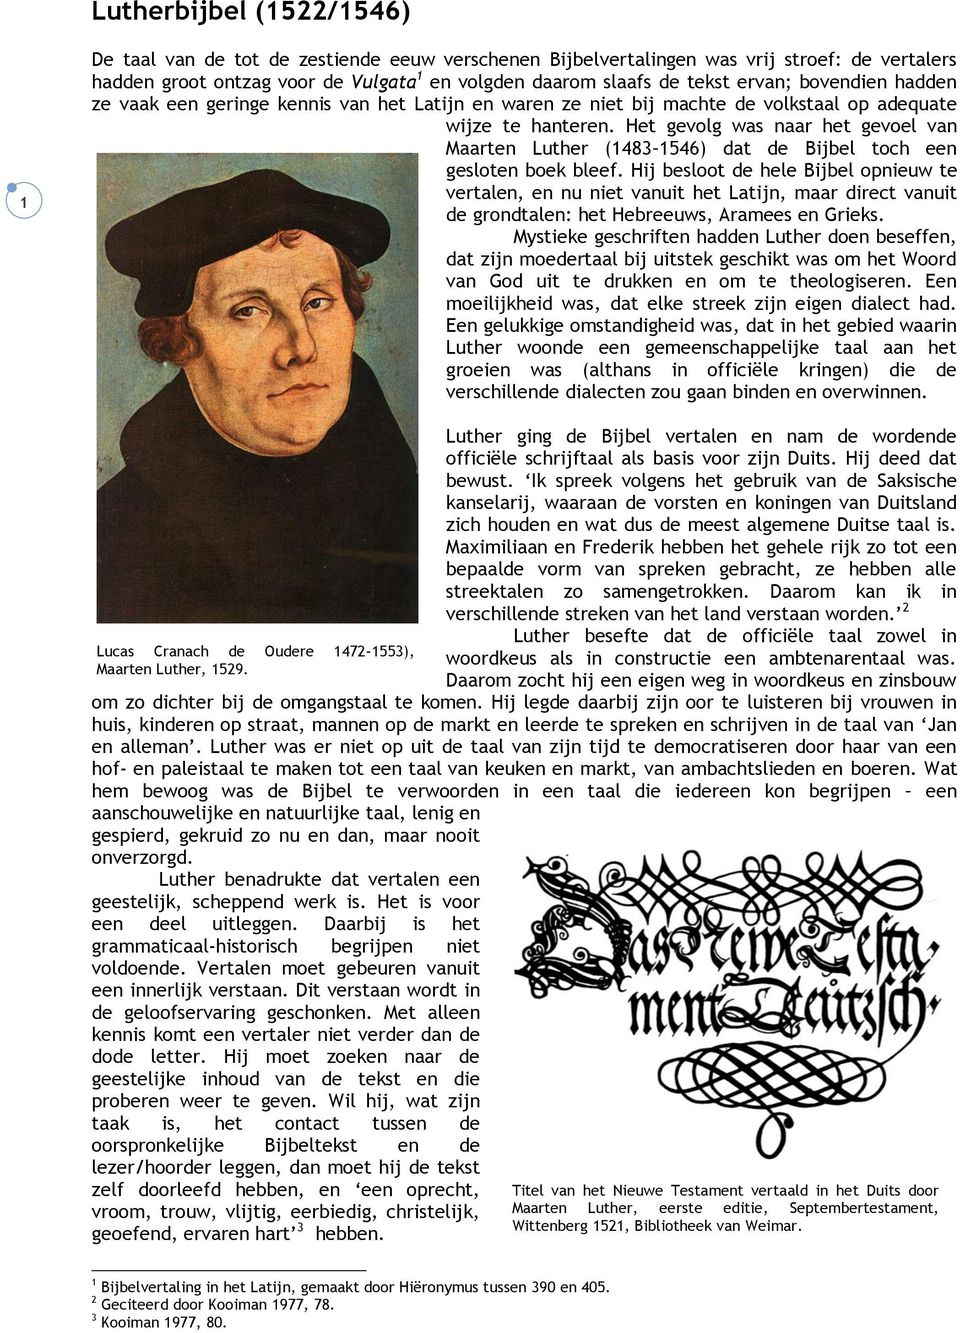 Het gevolg was naar het gevoel van Maarten Luther (1483 1546) dat de Bijbel toch een gesloten boek bleef.